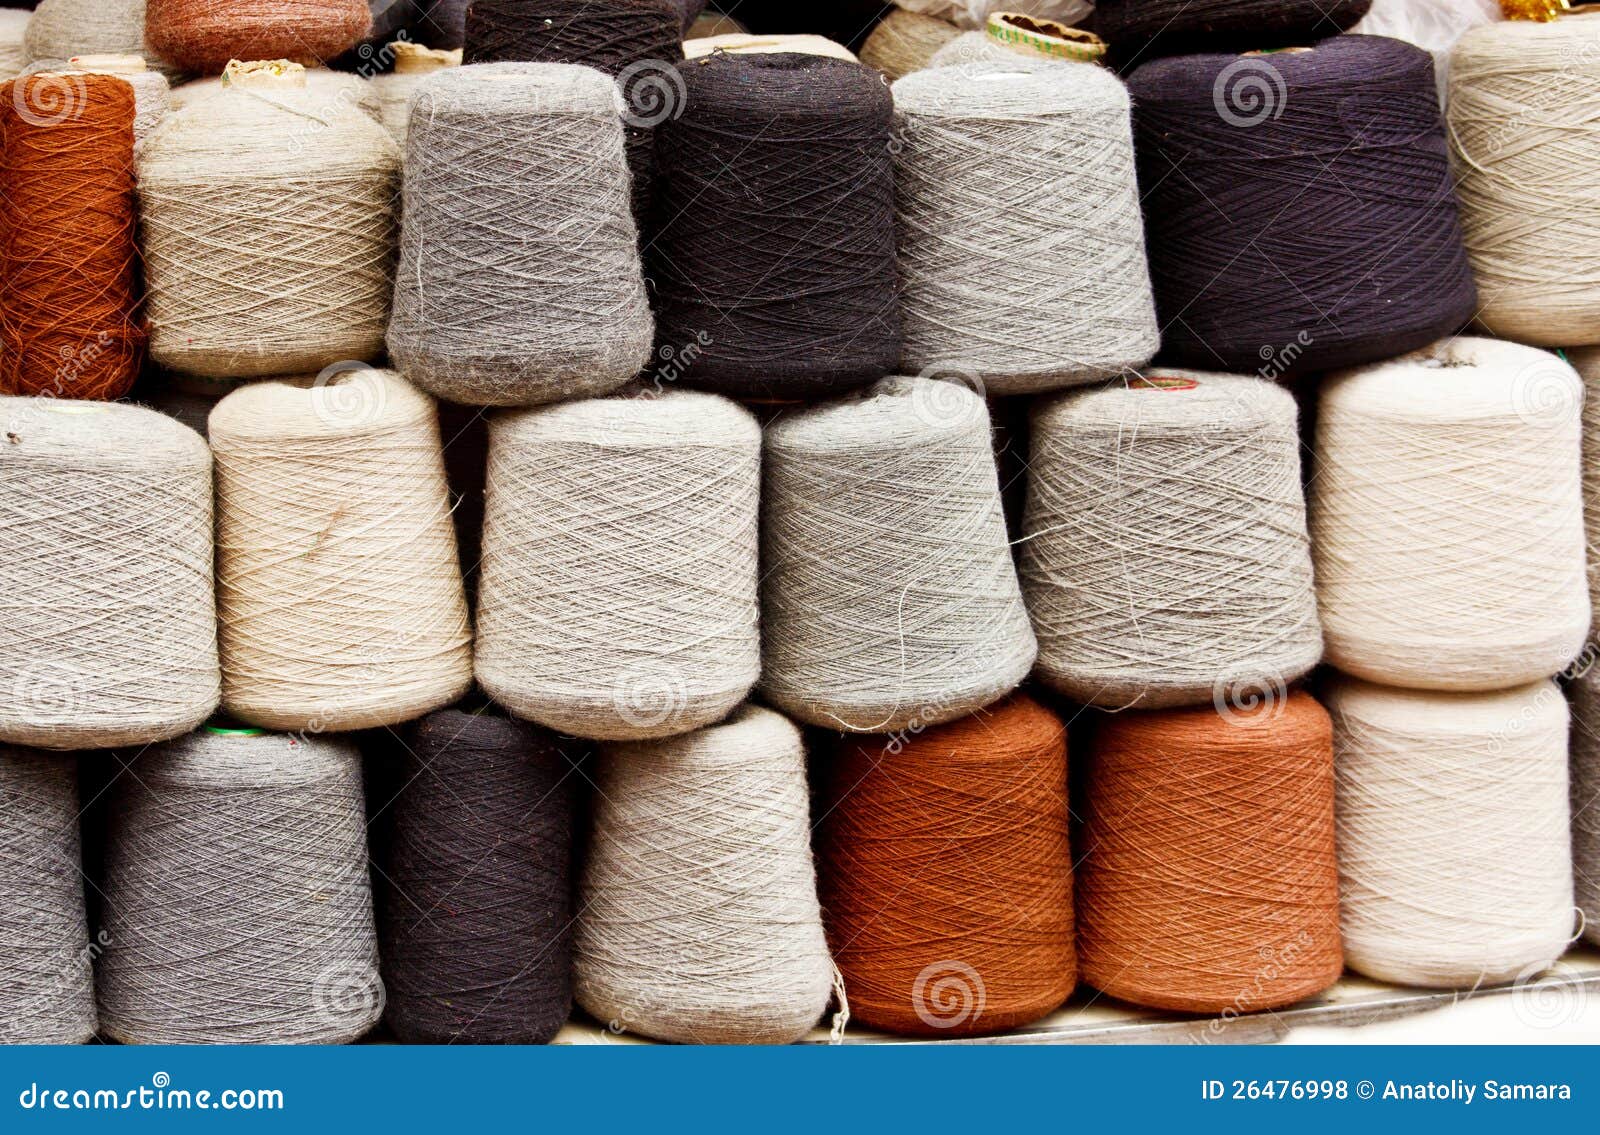 natural wool yarn